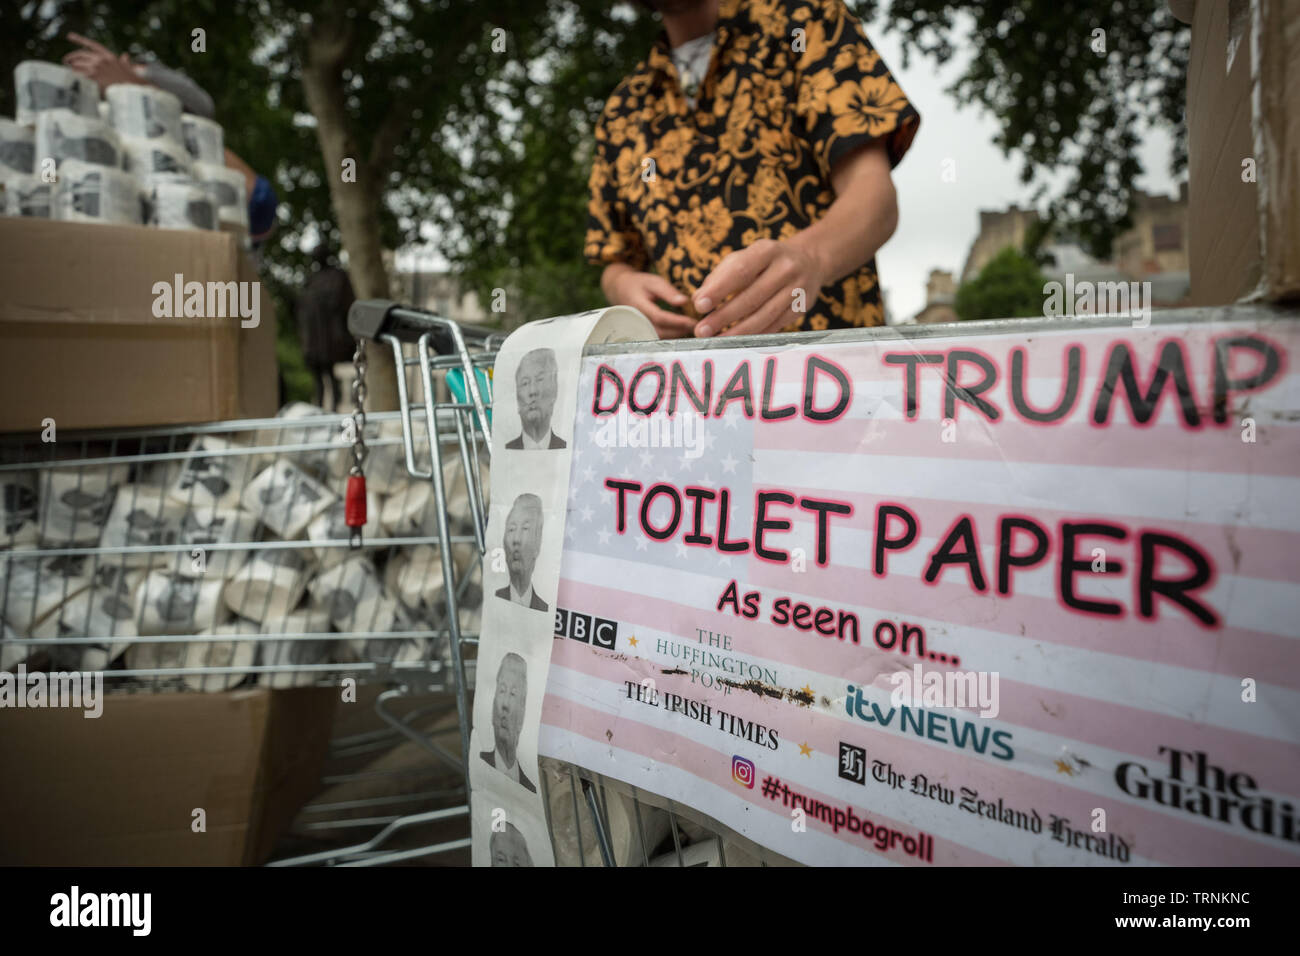 Londres, Royaume-Uni. 4 juin 2019. Donald Trump nouveauté papier toilette est vendu dans la place du Parlement dans le cadre des manifestations contre le président américain, Donald Trump's UK visite d'état. Crédit : Guy Josse/Alamy Live News Banque D'Images